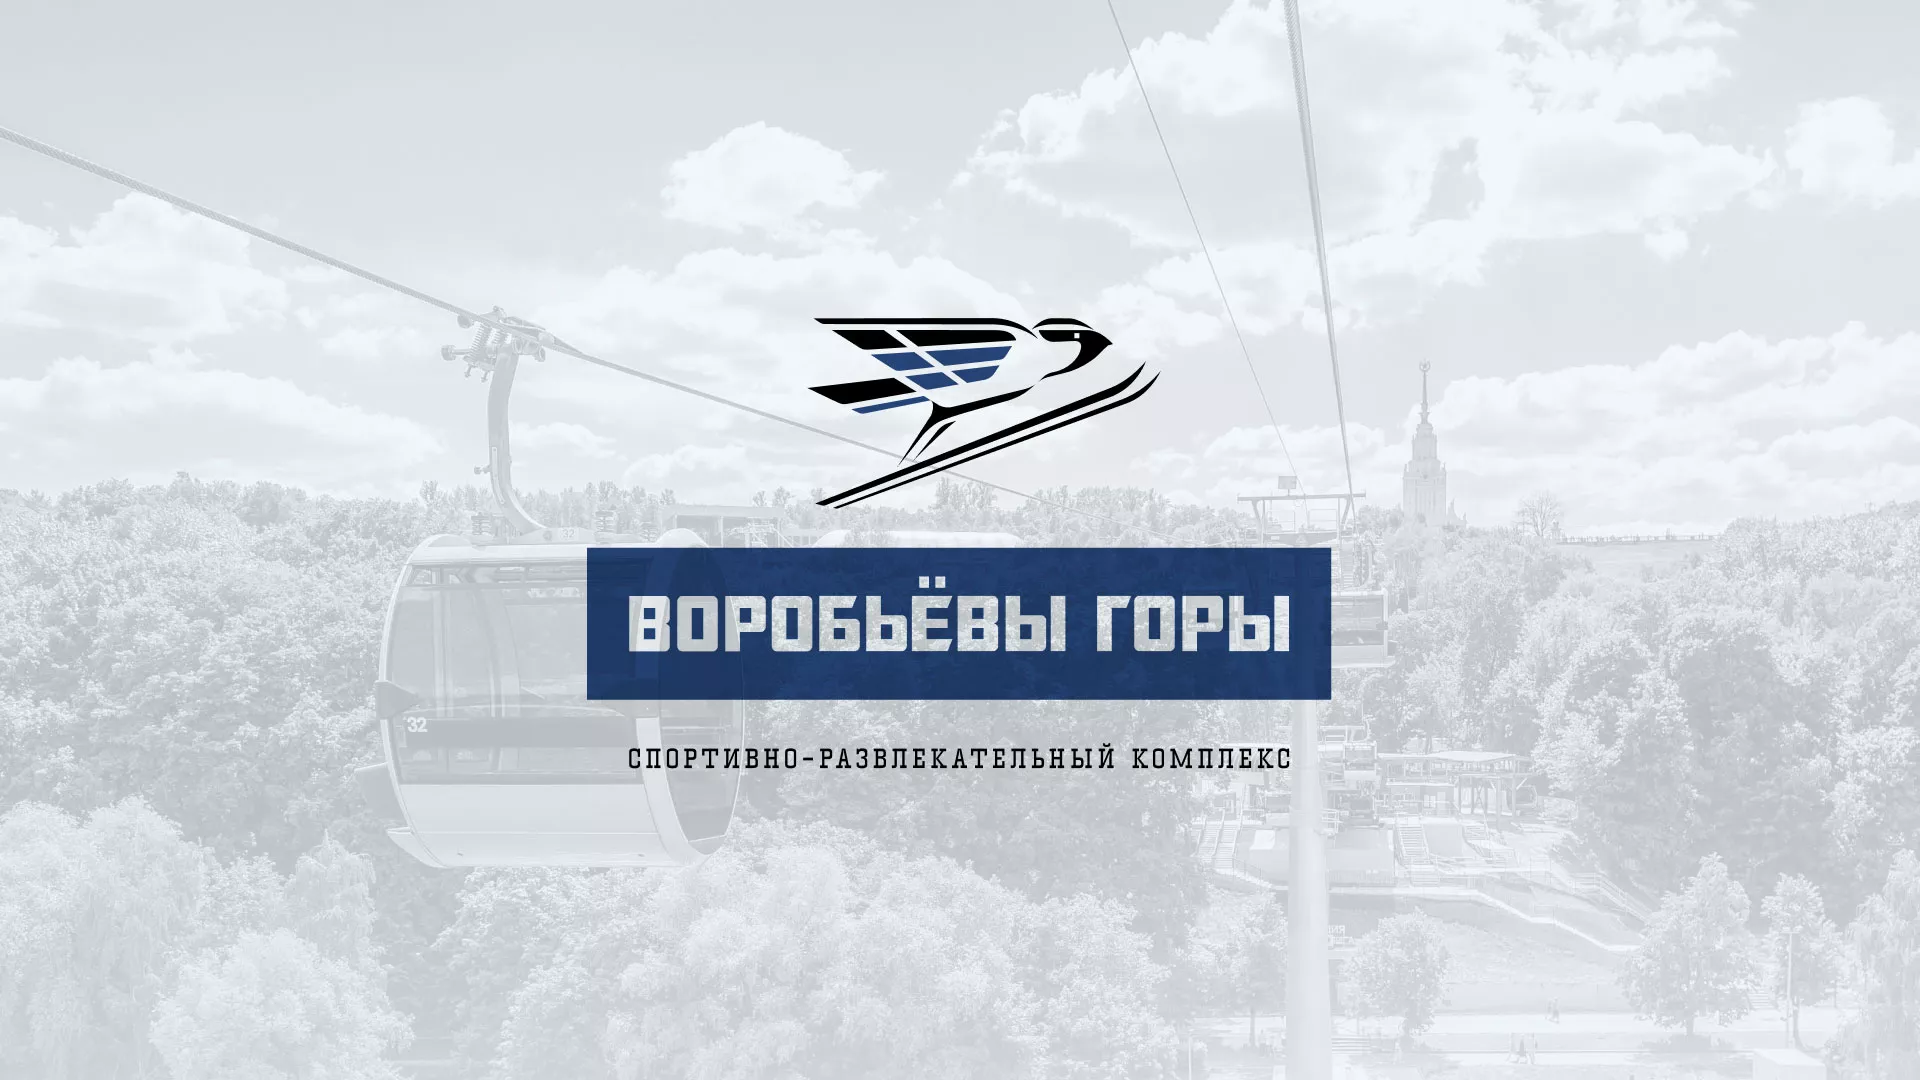 Разработка сайта в Челябинске для спортивно-развлекательного комплекса «Воробьёвы горы»